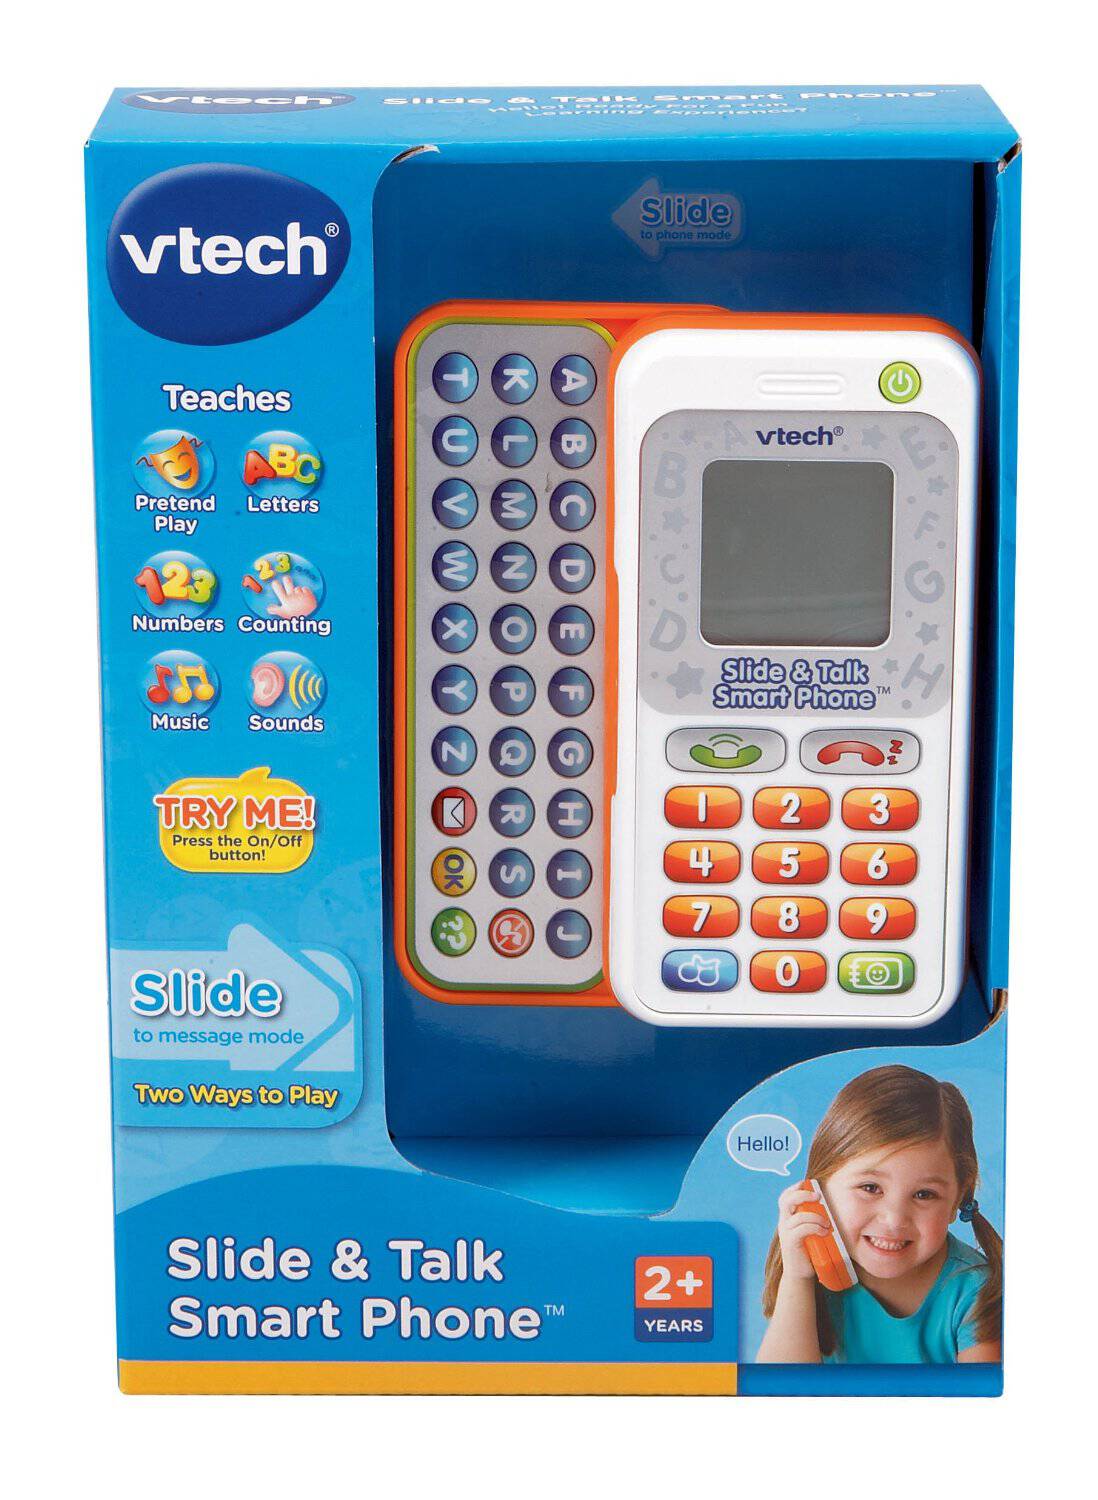 Vtech Slide Phone